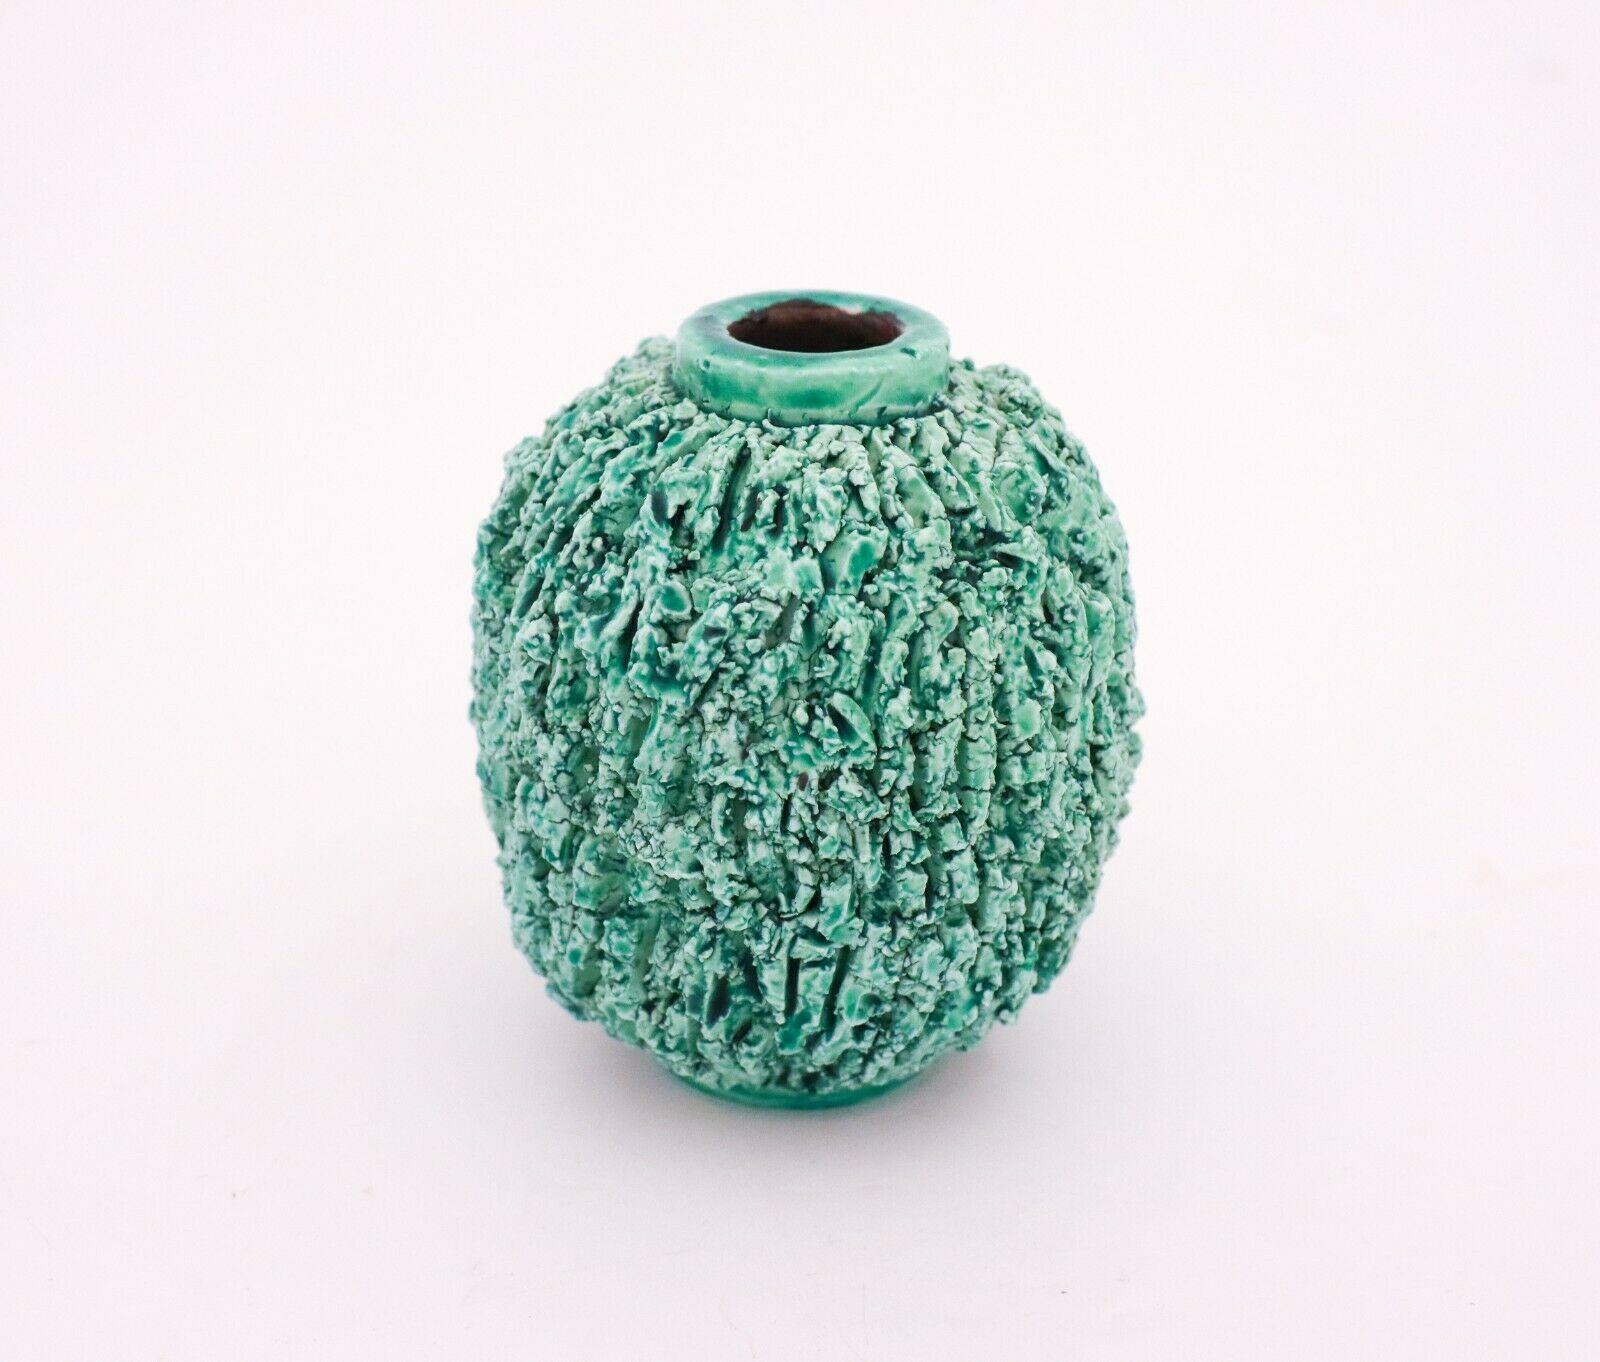 Un vase en forme de hérisson vert conçu par Gunnar Nylund à Rörstrand, le vase est de 12 cm de haut et il est en très bon état à l'exception de quelques marques mineures. Ces vases hérissons sont devenus une icône pour Gunnar Nylund. 

Gunnar